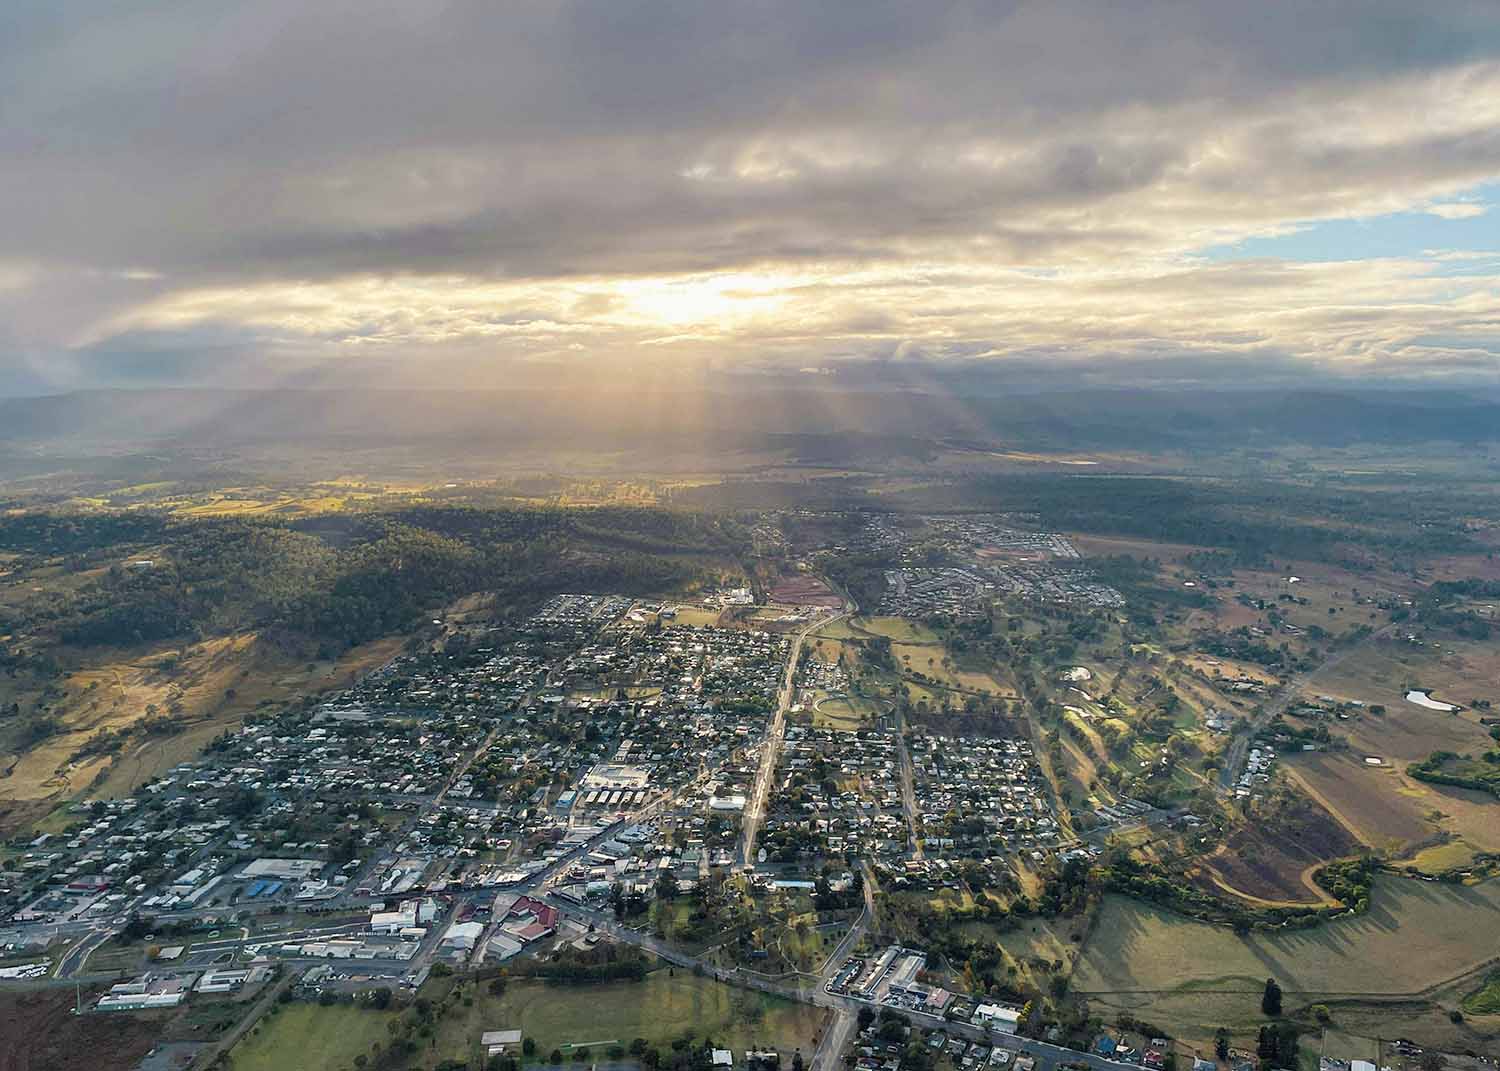 Aerial view of farmland surrounding Beaudesert